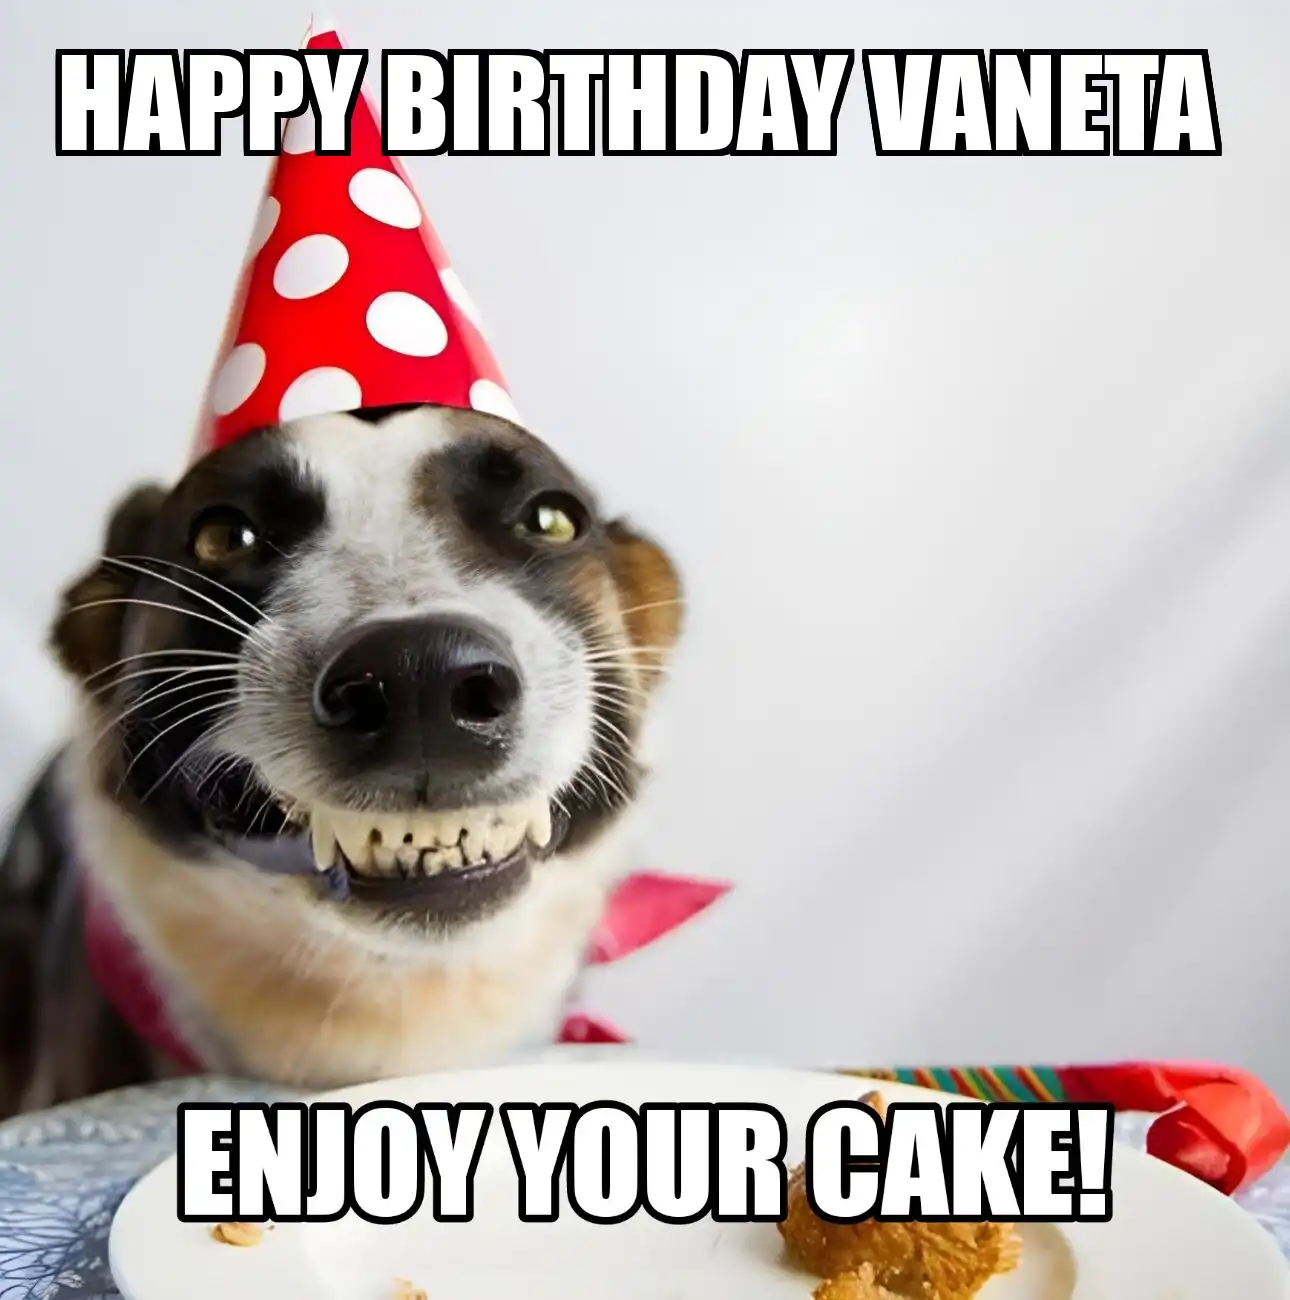 Happy Birthday Vaneta Enjoy Your Cake Dog Meme